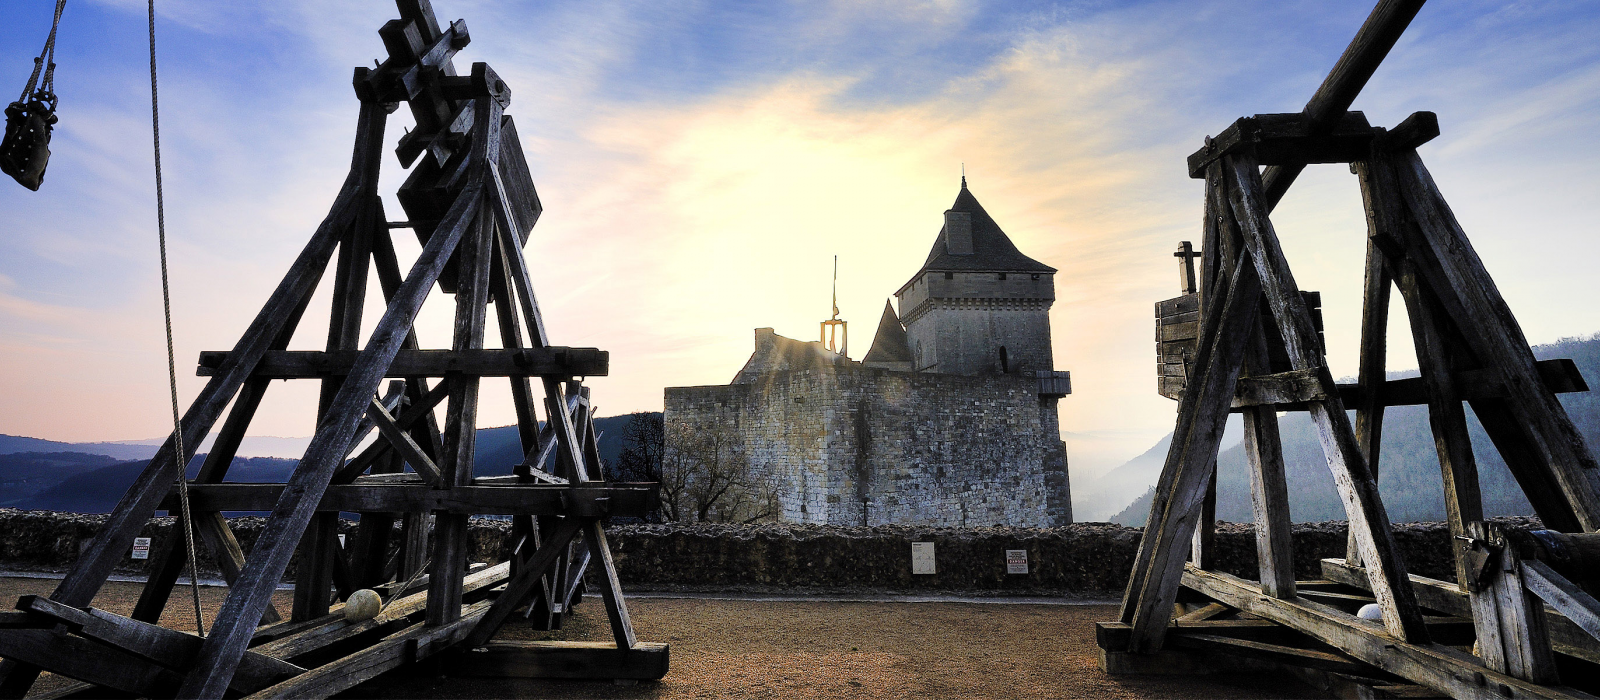 Musée de la guerre médiévale - Château de Castelnaud